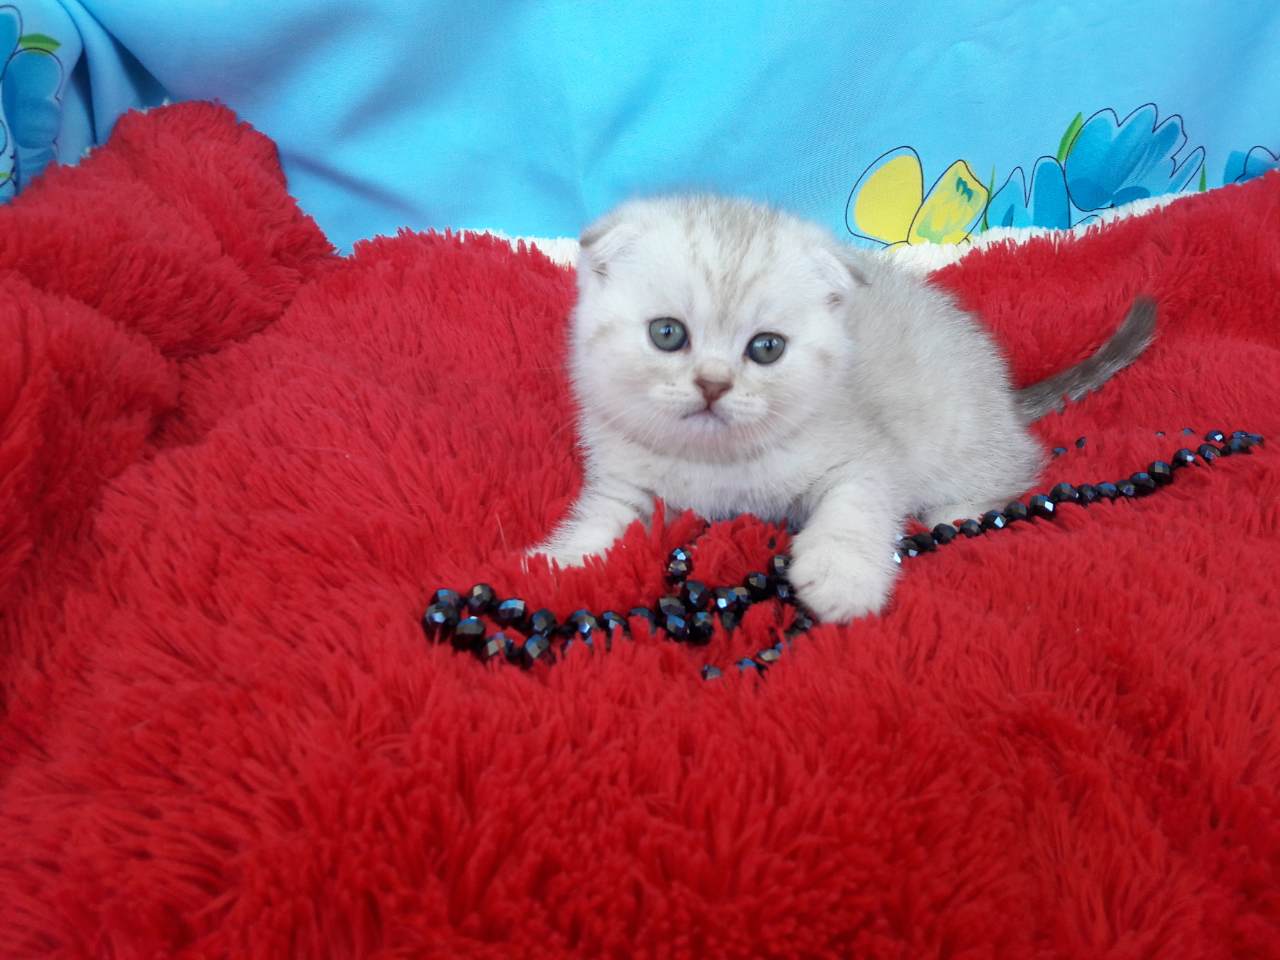 продается котенок-шотландец окраса шоколадный серебристый пятнистый из питомника в Минске